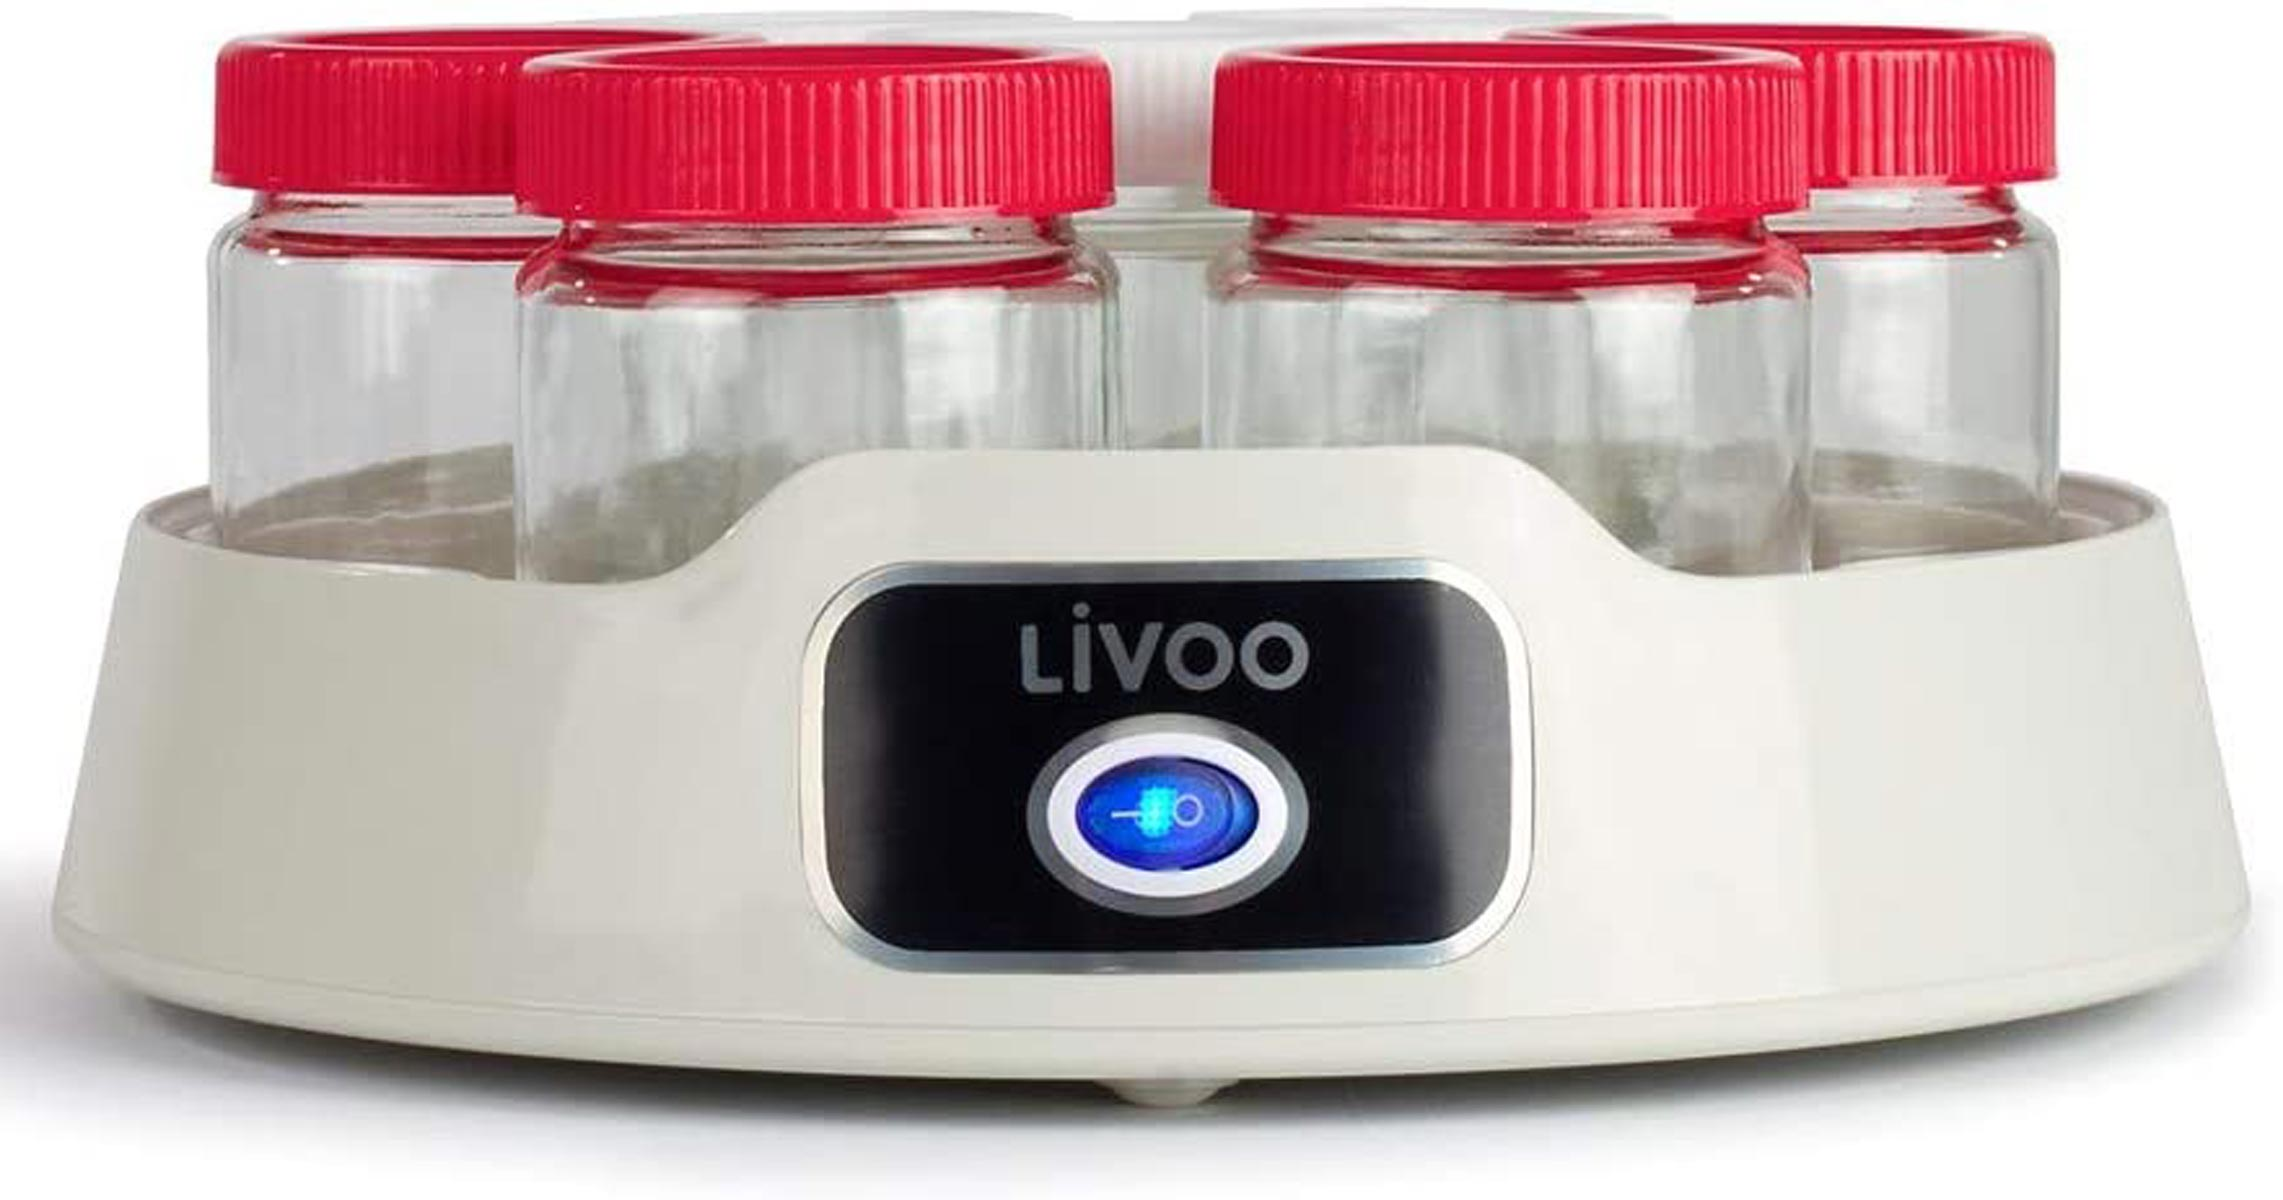 LIVOO DOP180 Joghurtbereiter (20 Watt)